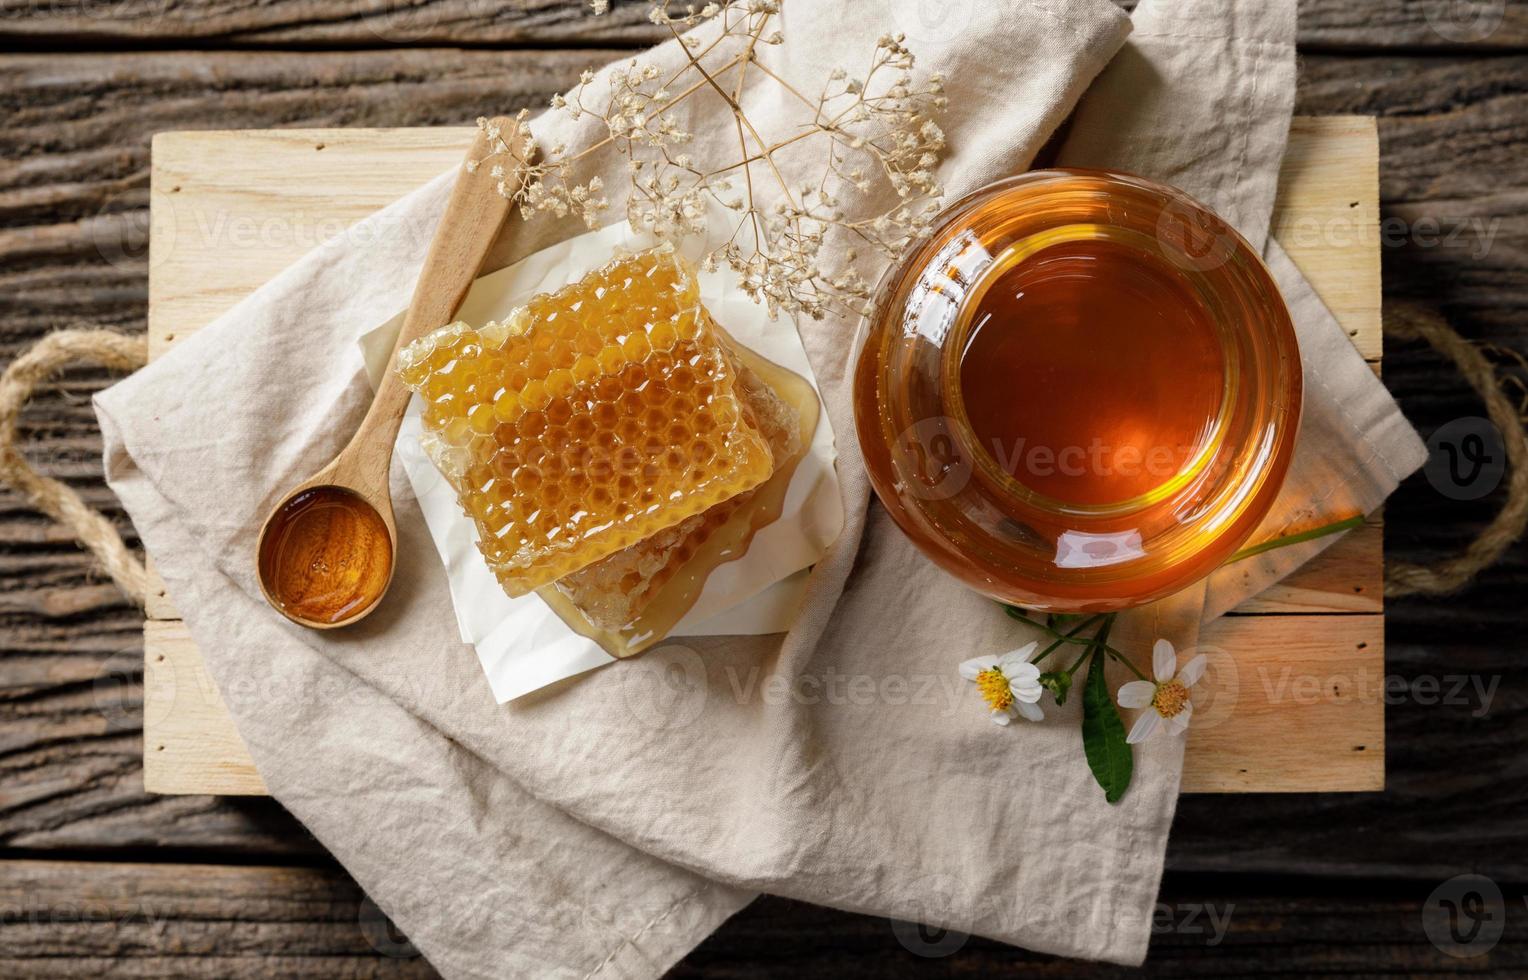 abelha de mel em pote e favo de mel com concha de mel e flor na mesa de madeira, produtos apícolas pelo conceito de ingredientes naturais orgânicos foto